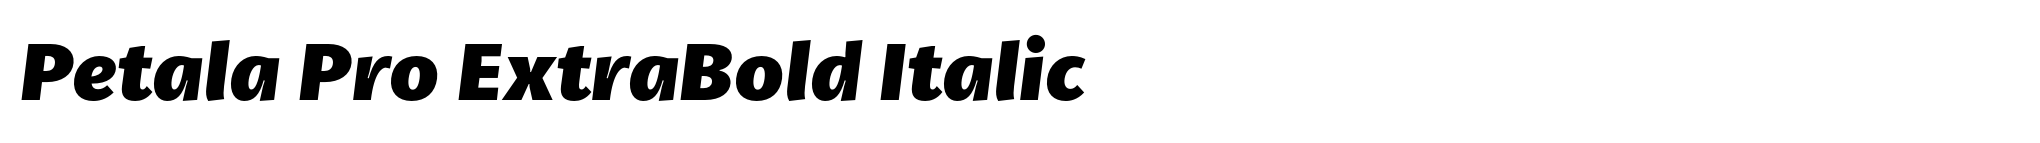 Petala Pro ExtraBold Italic image